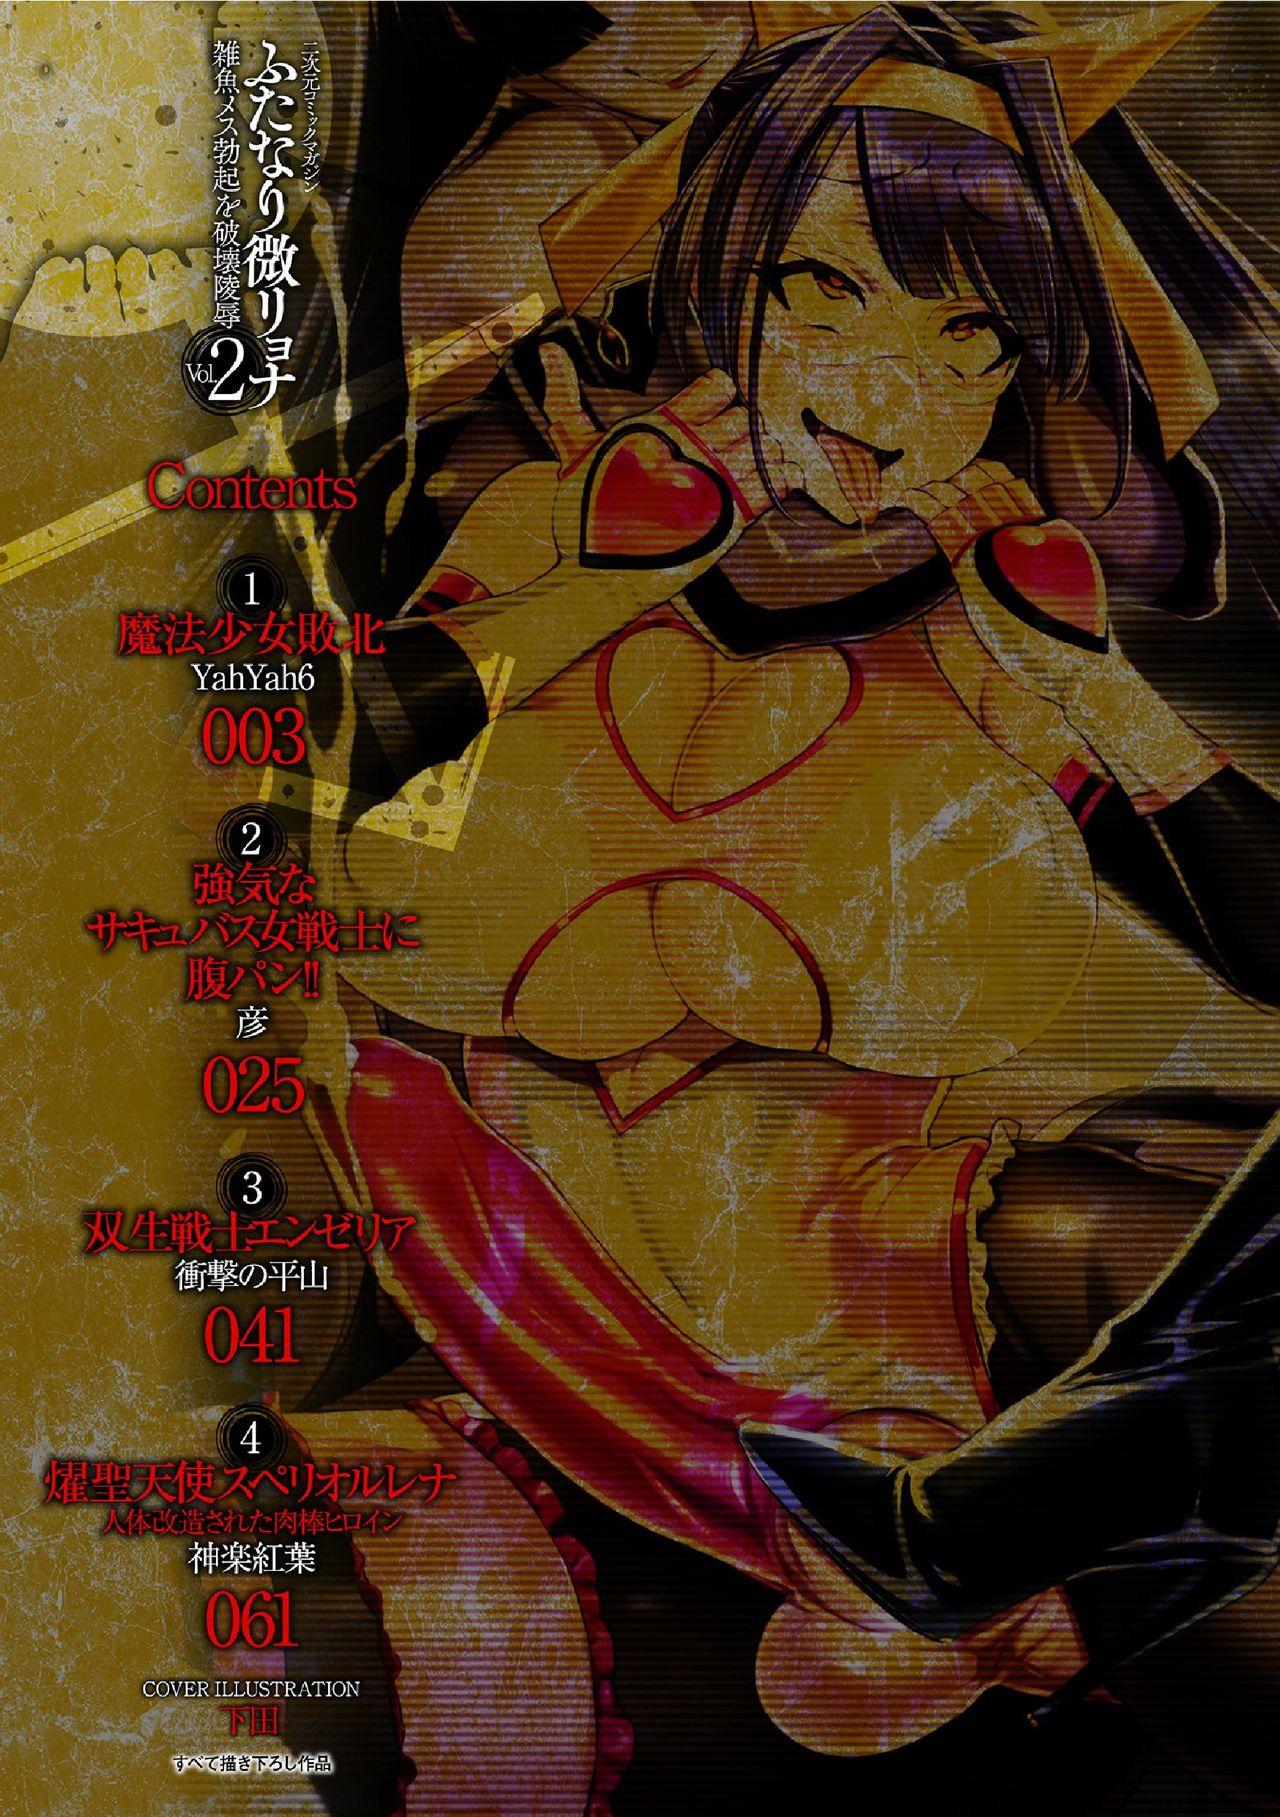 2D Comic Magazine Futanari bi ryona zako mesu bokki o hakai ryōjoku vol.2 1